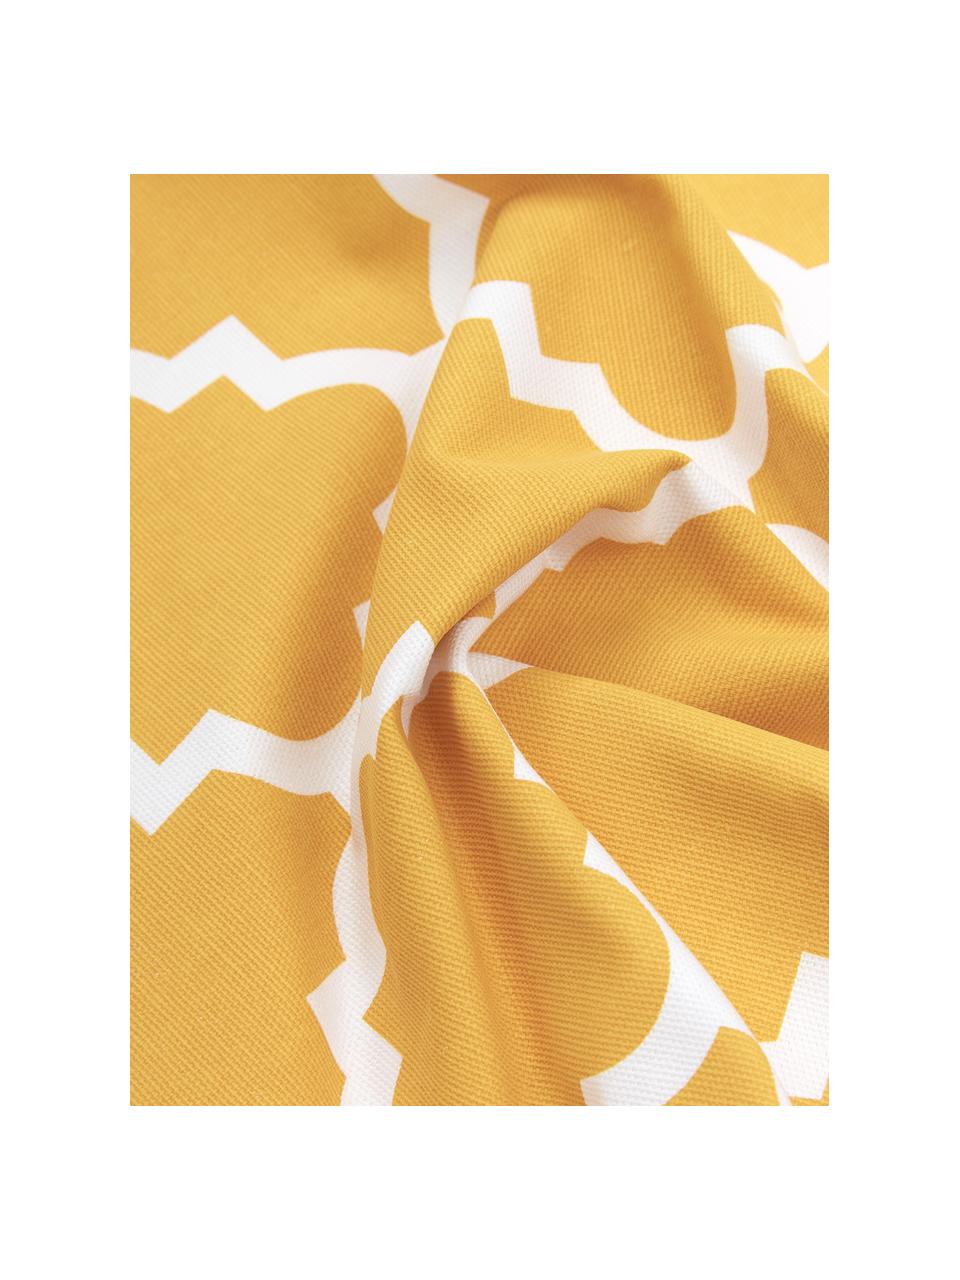 Kissenhülle Lana in Gelb mit grafischem Muster, 100% Baumwolle, Gelb, Weiß, 45 x 45 cm